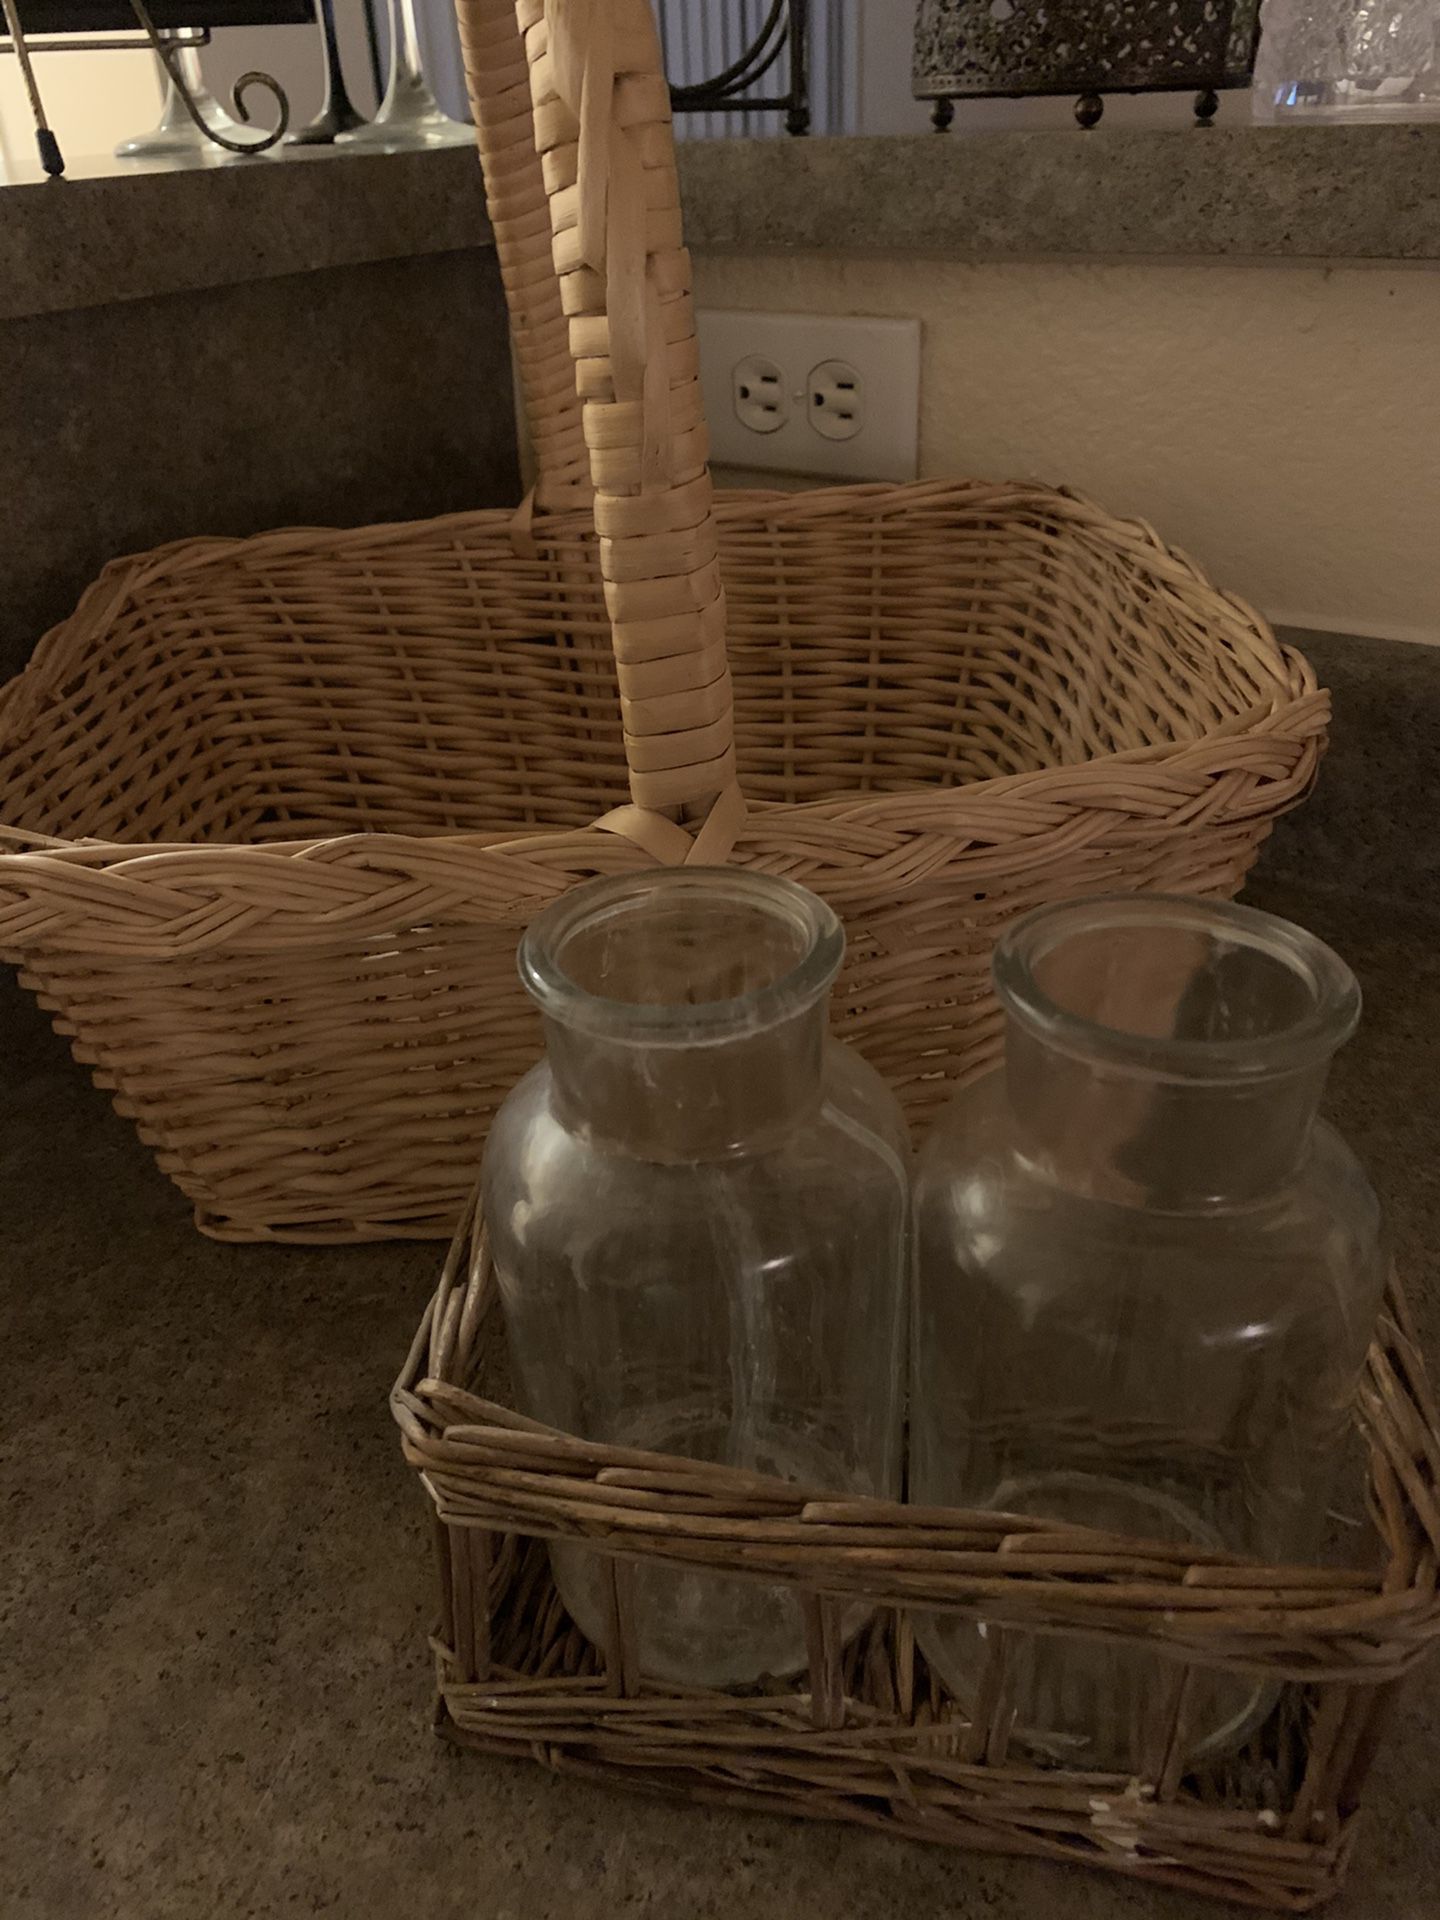 Basket 🧺 and jars